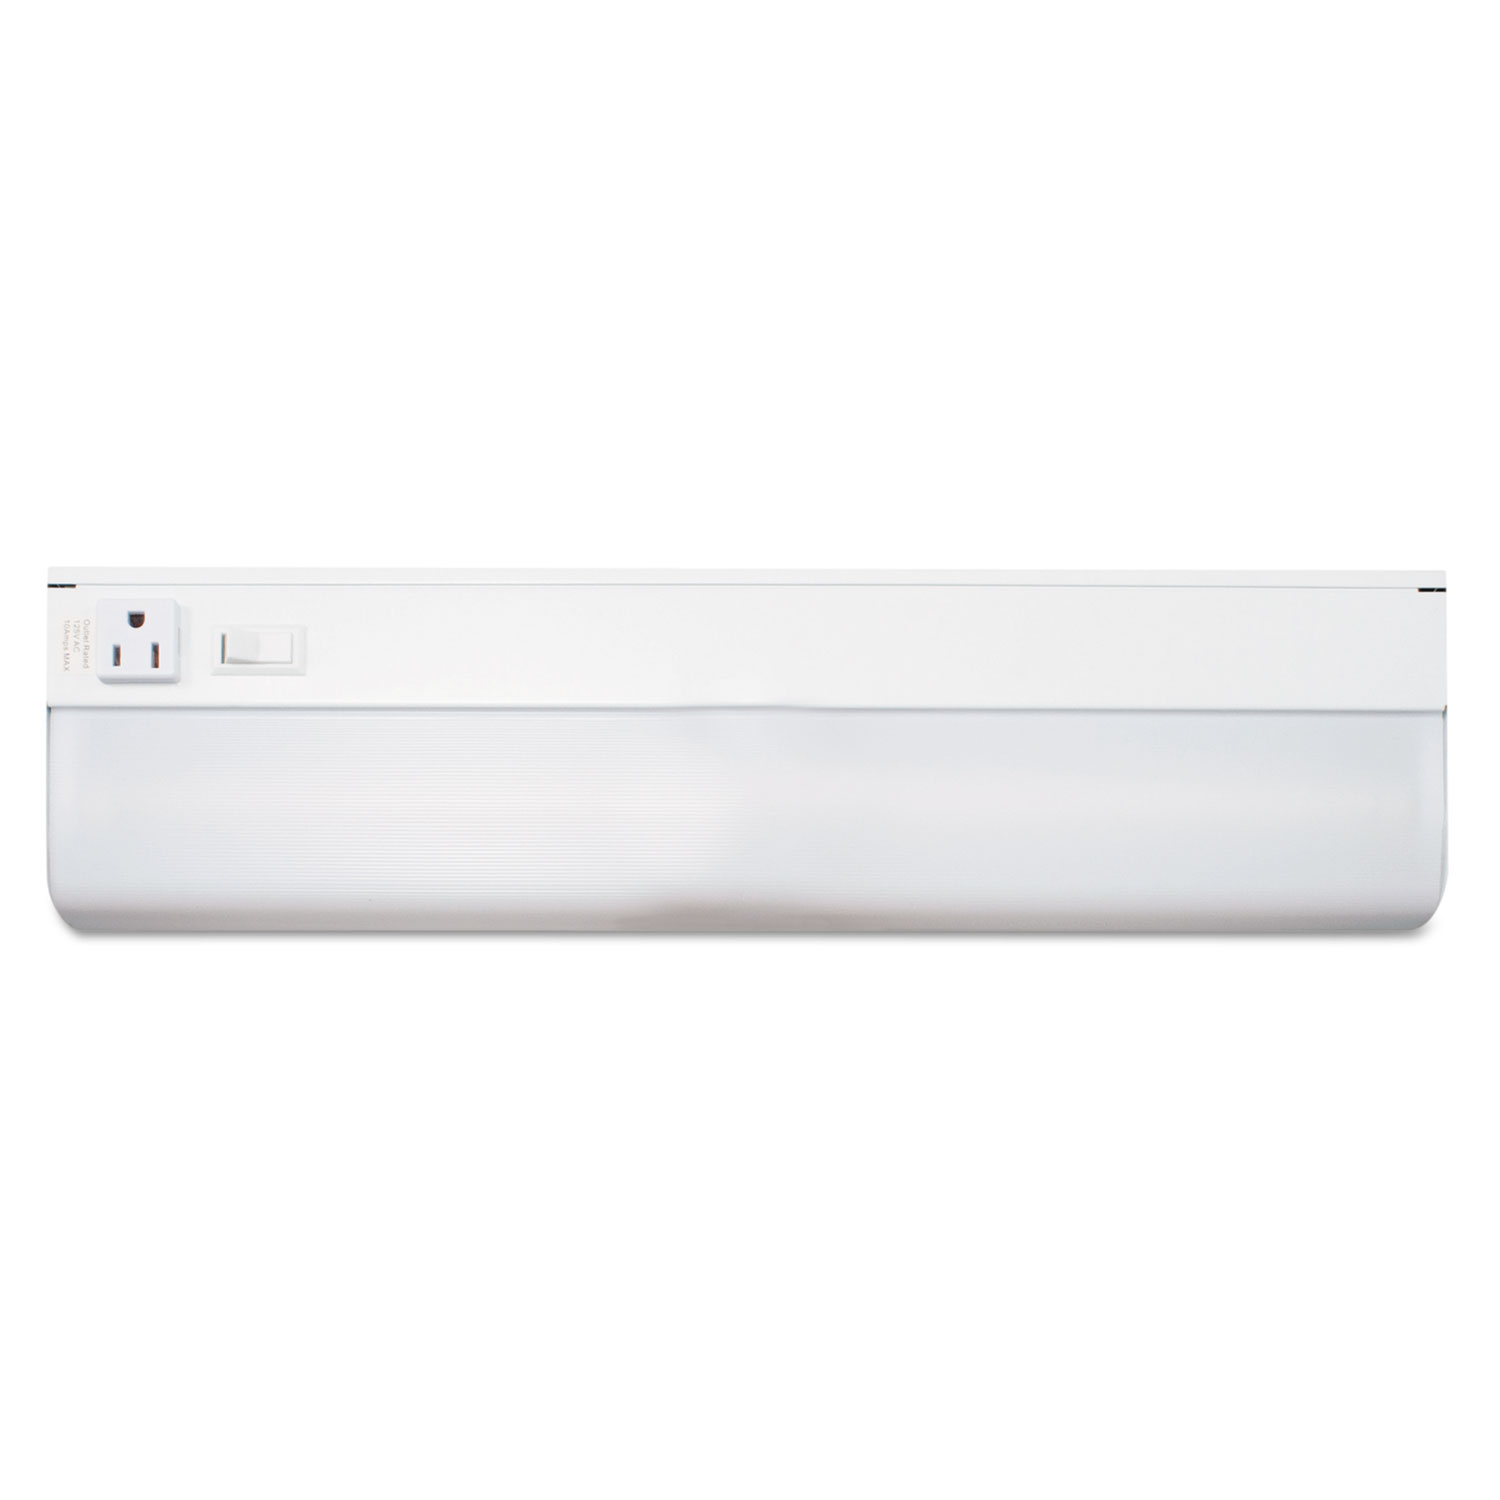  Ledu L9011 Under-Cabinet Fluorescent Fixture, Steel, 18.25w x 4d x 1.63h, White (LEDL9011) 